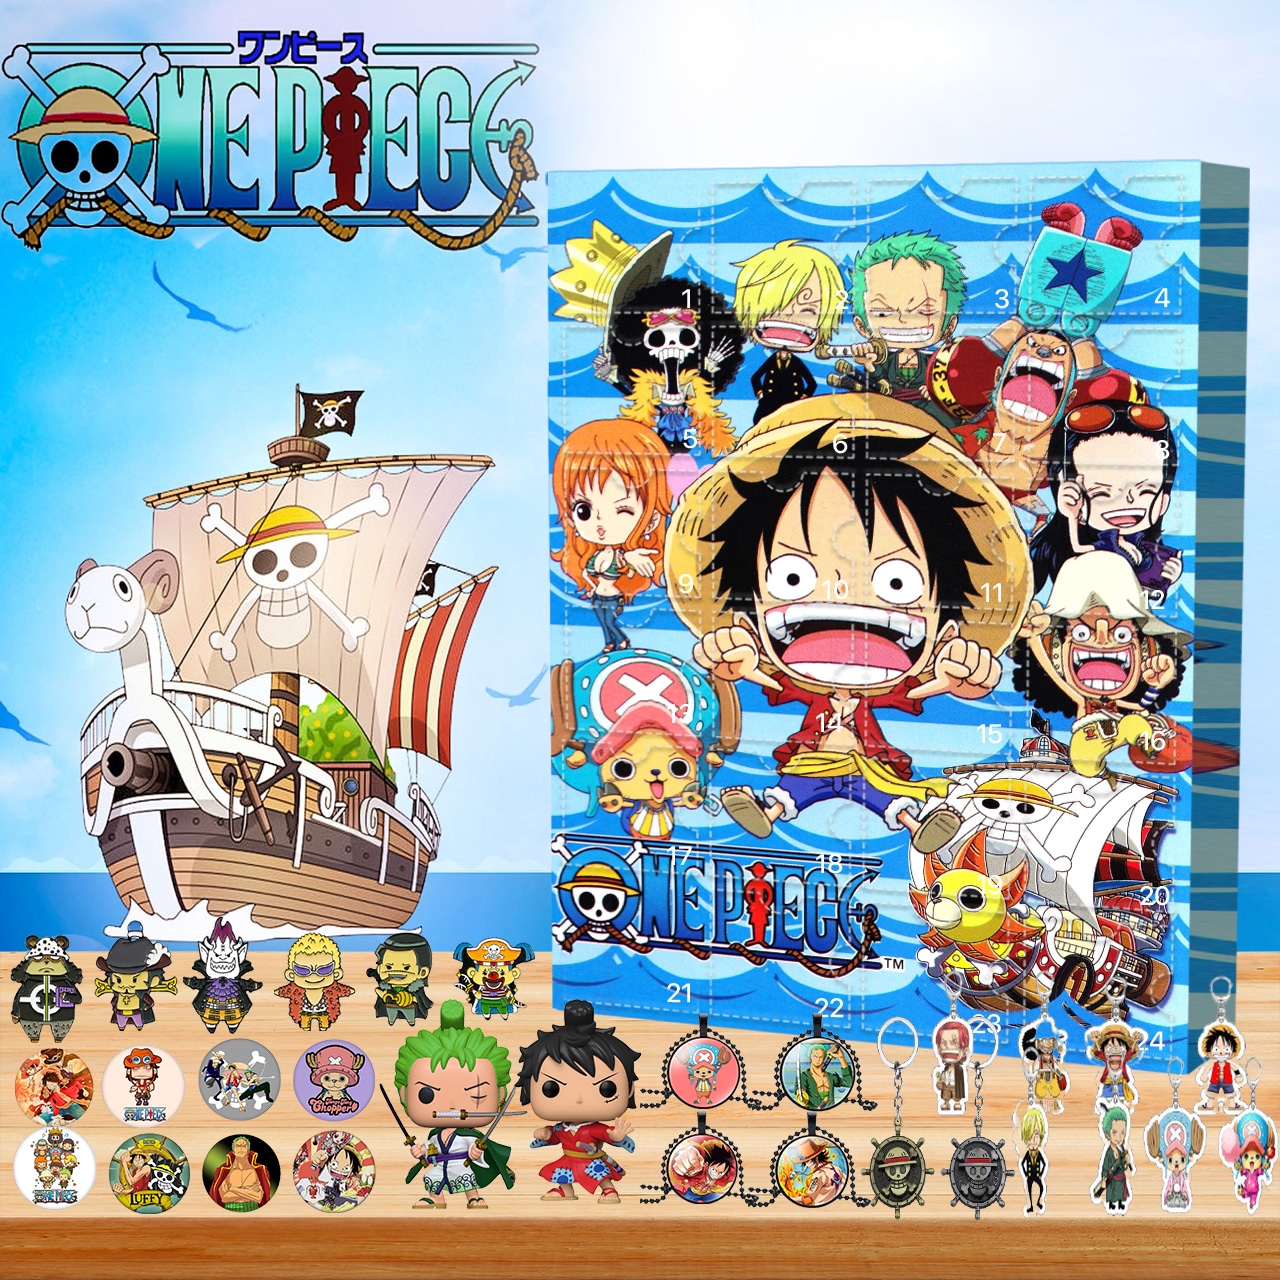 Calendrier de l'avent One Piece Equipage à petits prix